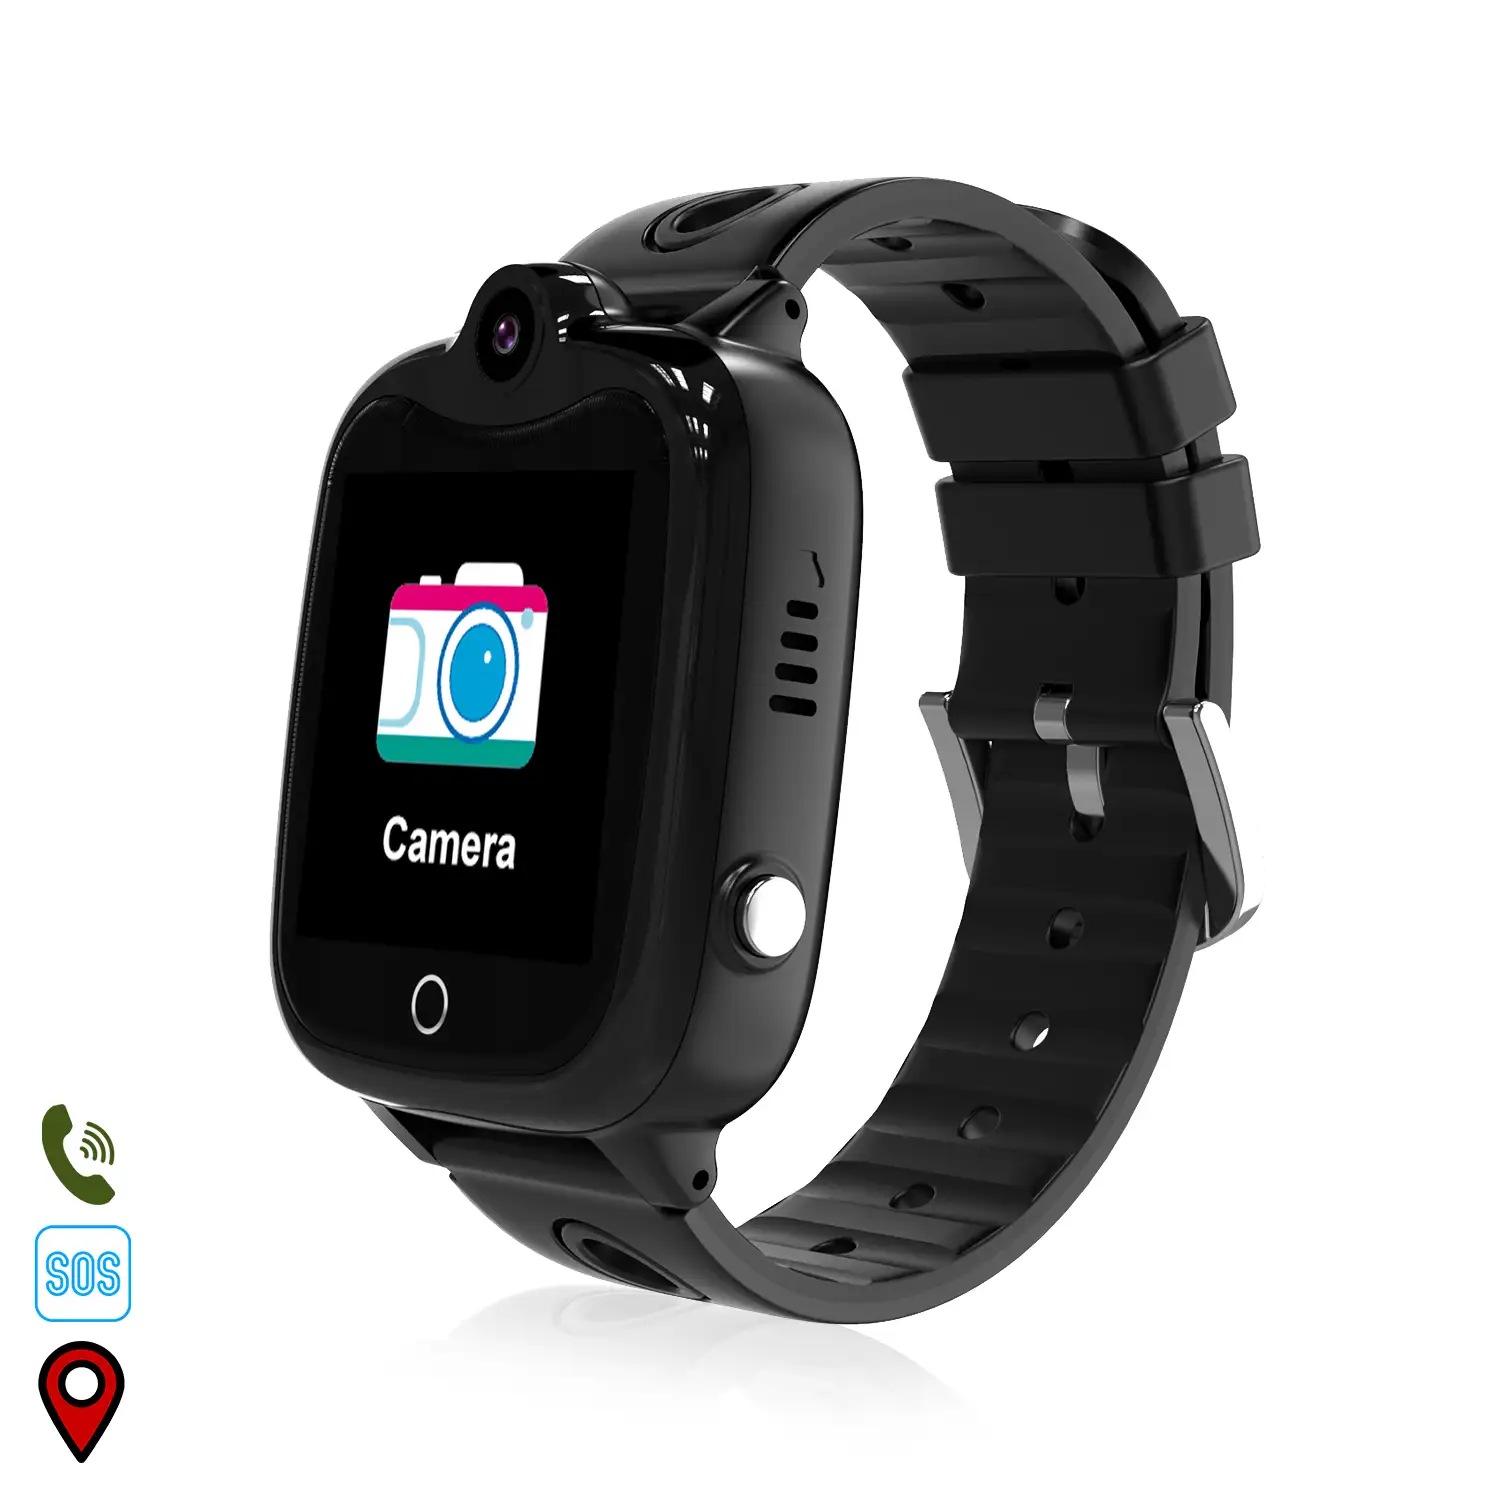 Smartwatch GPS localizador DS06 para niños. Intercomunicador, area de seguridad, comunicación de 2 vías.